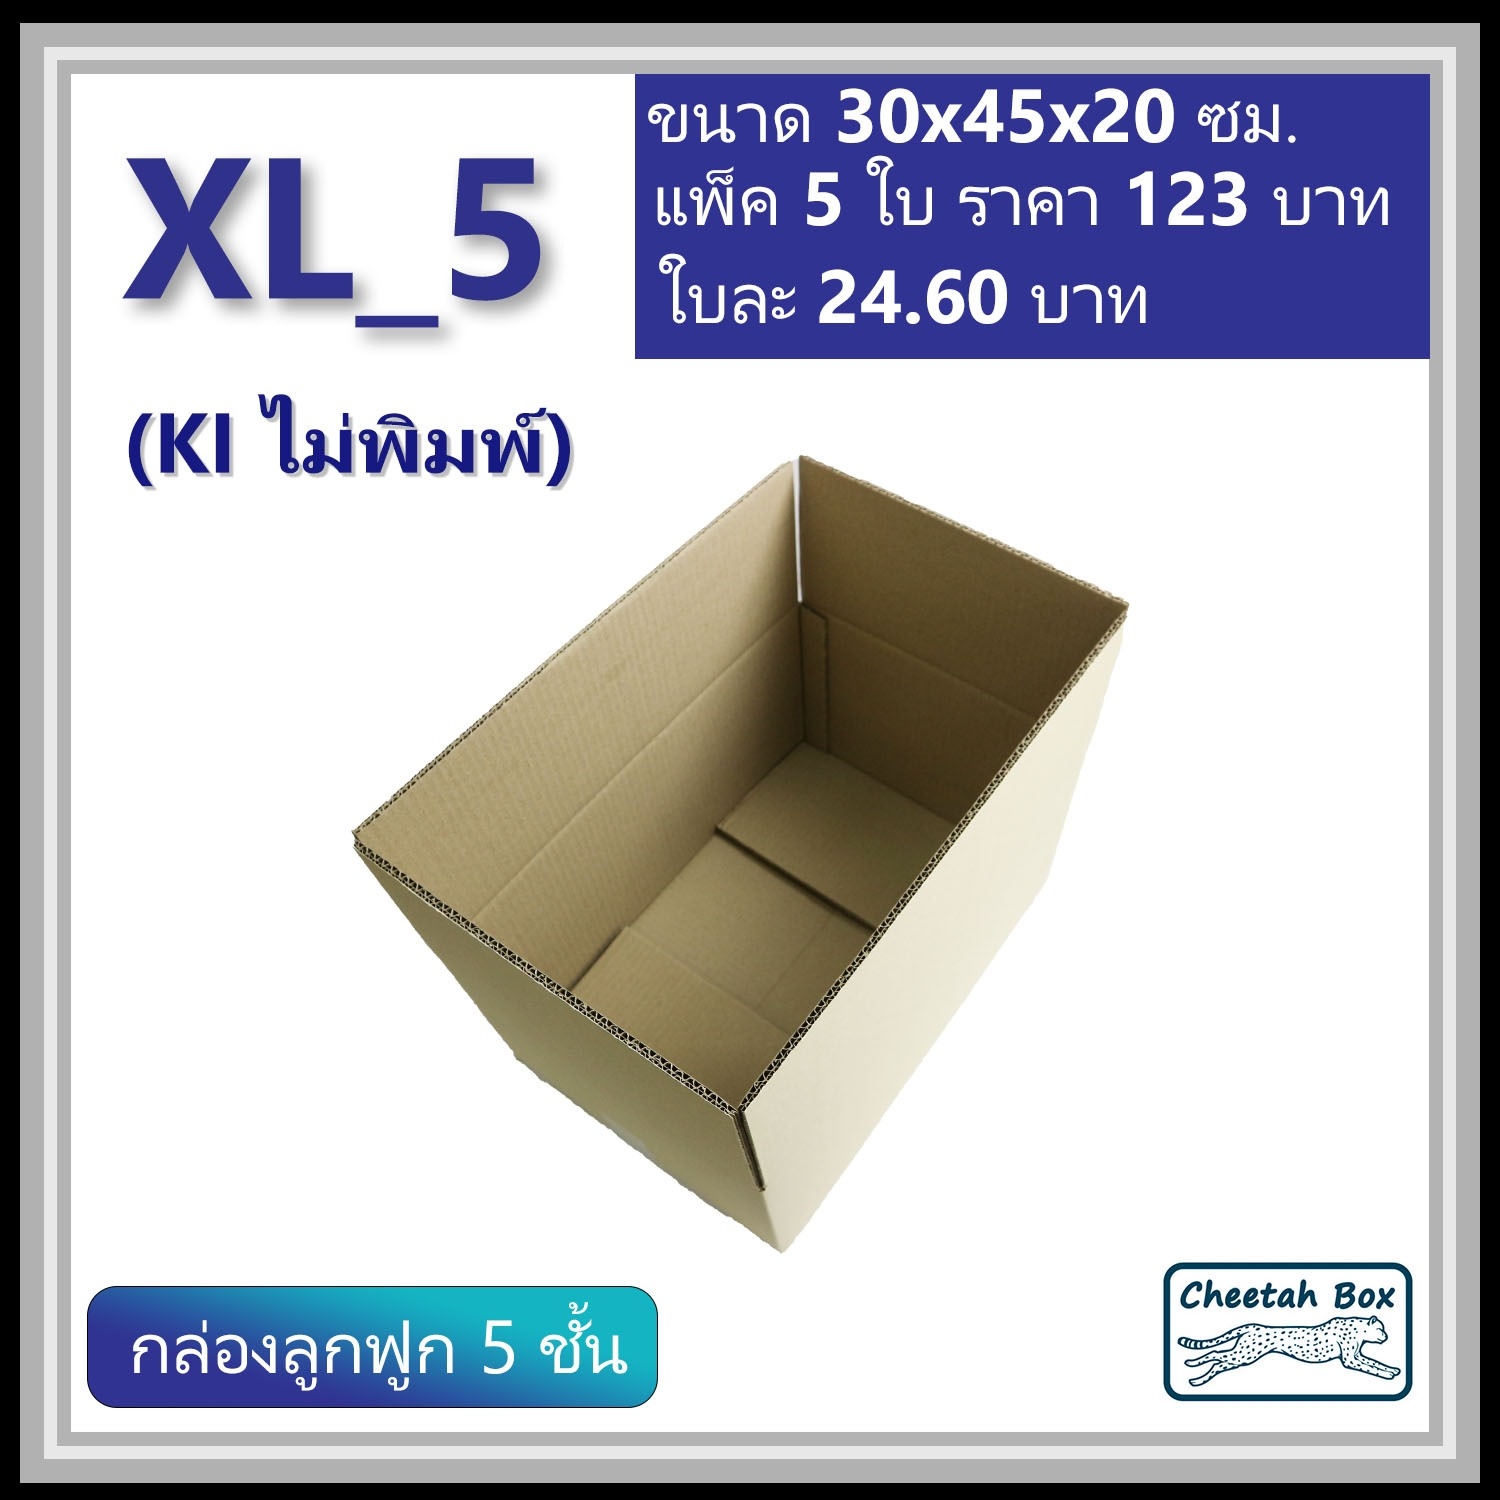 กล่องพัสดุ XL_5 ไม่พิมพ์ (Post Box) ลูกฟูก 5 ชั้น ขนาด 30W x 45L x 20H cm.